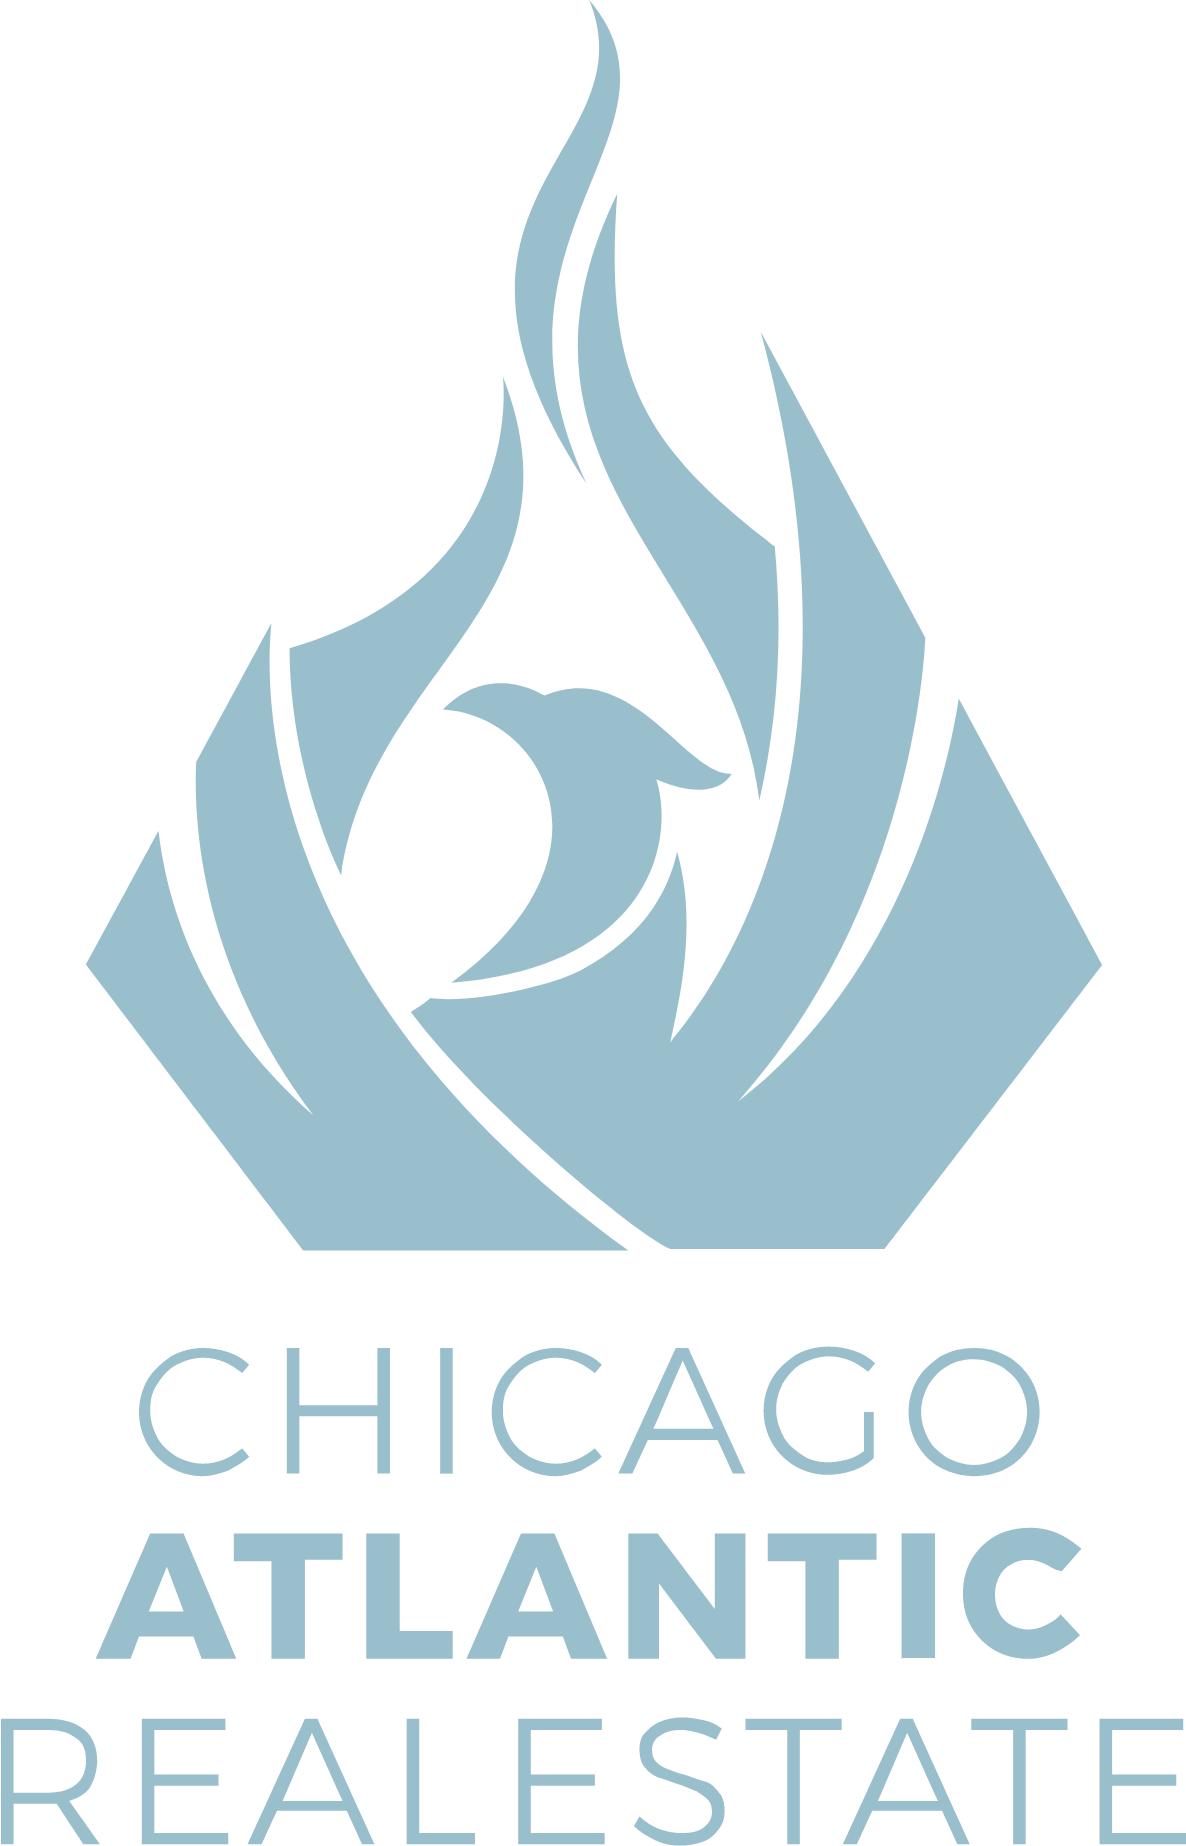 Chicago Atlantic Real Estate Finance logo large (transparent PNG)